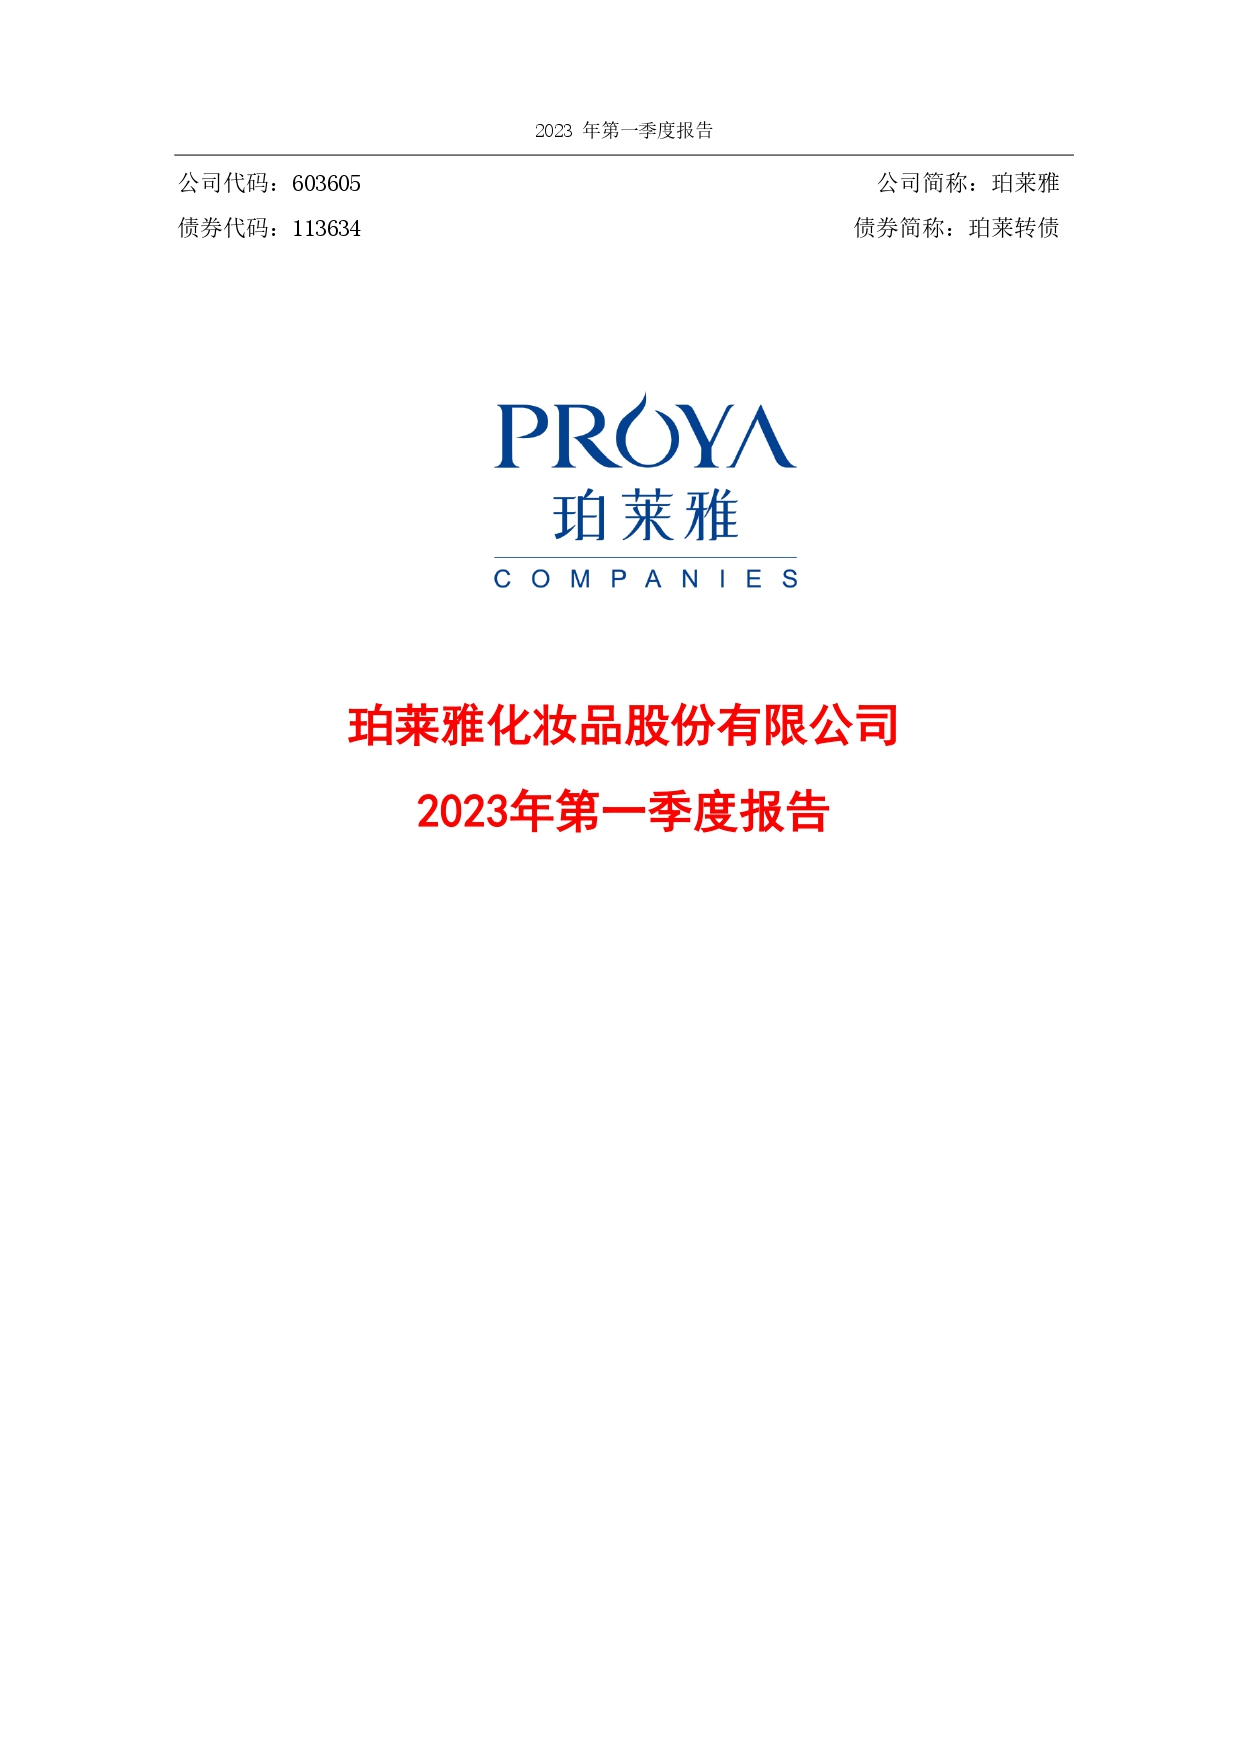 2023年第一季度财务报告封面_page-0001.jpg